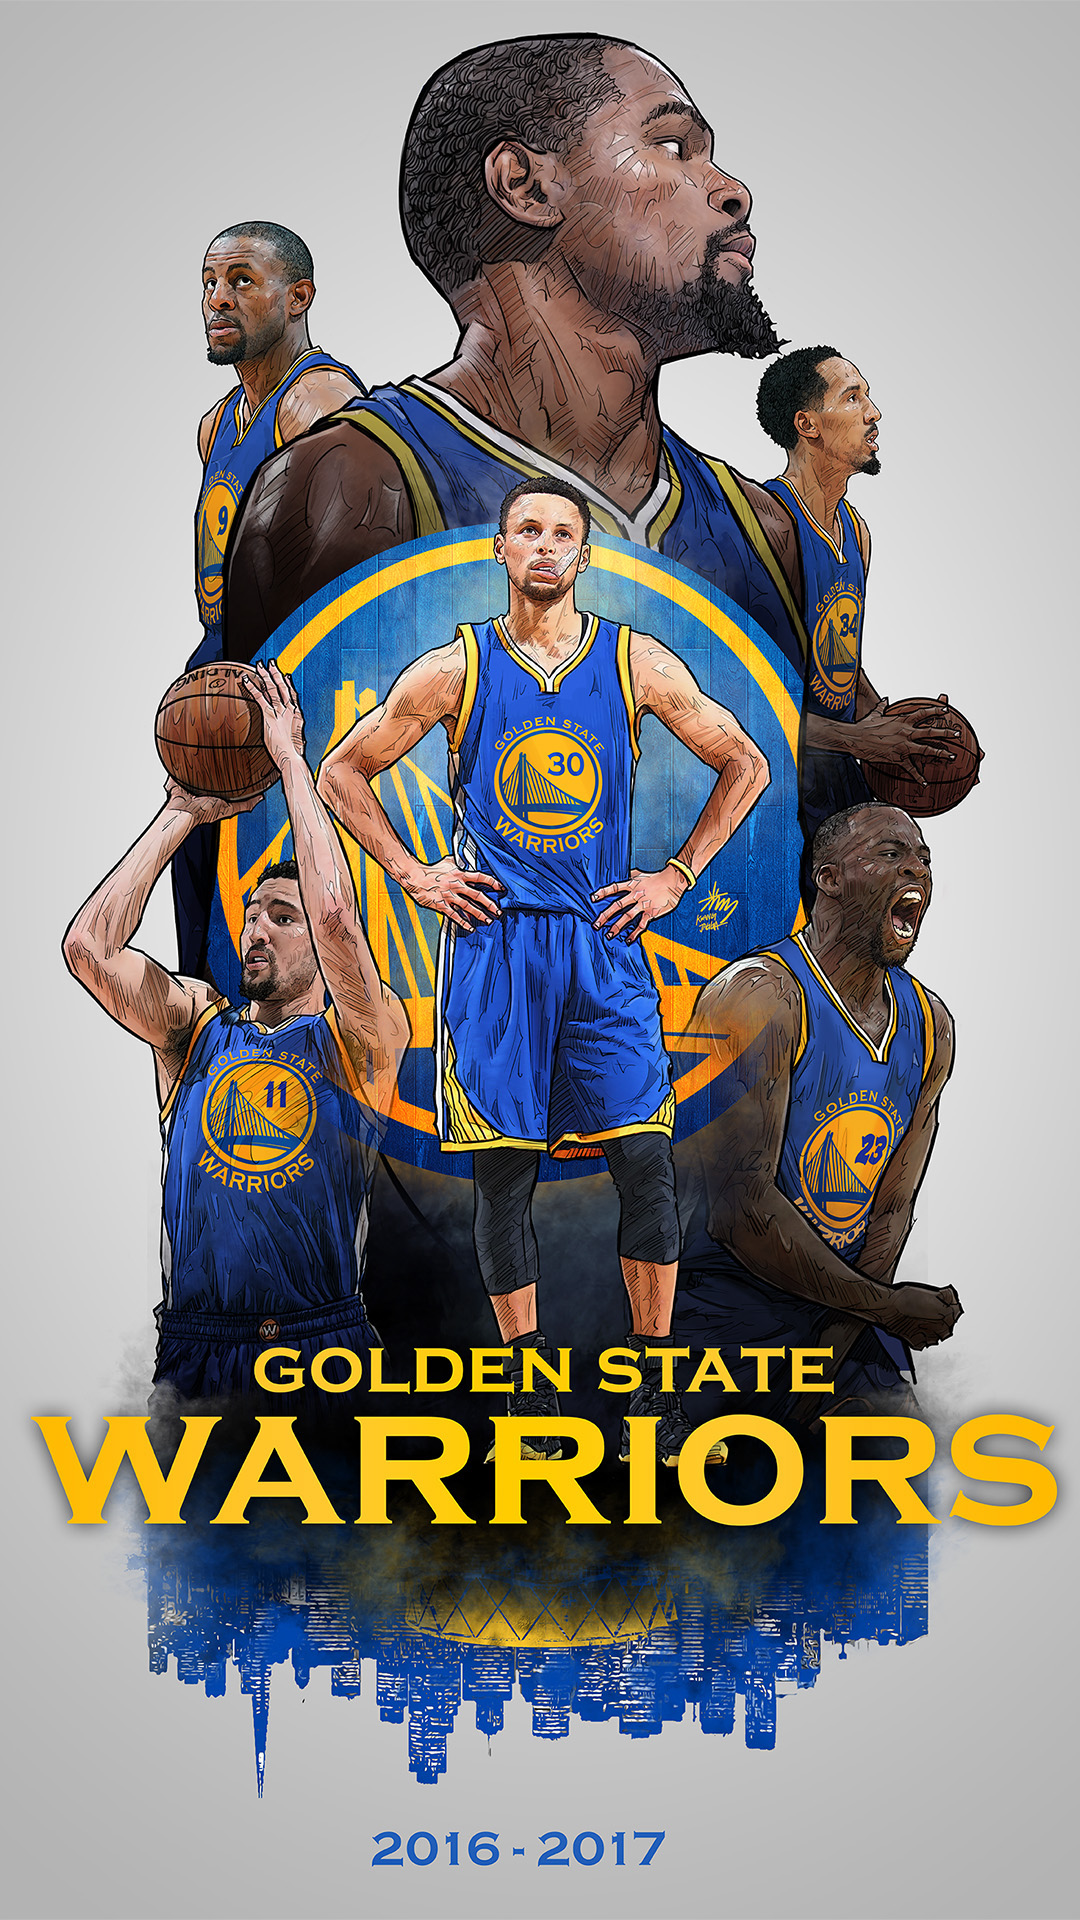 golden state warriors 2017 wallpaper,basketball spieler,sportbekleidung,basketball,jersey,poster